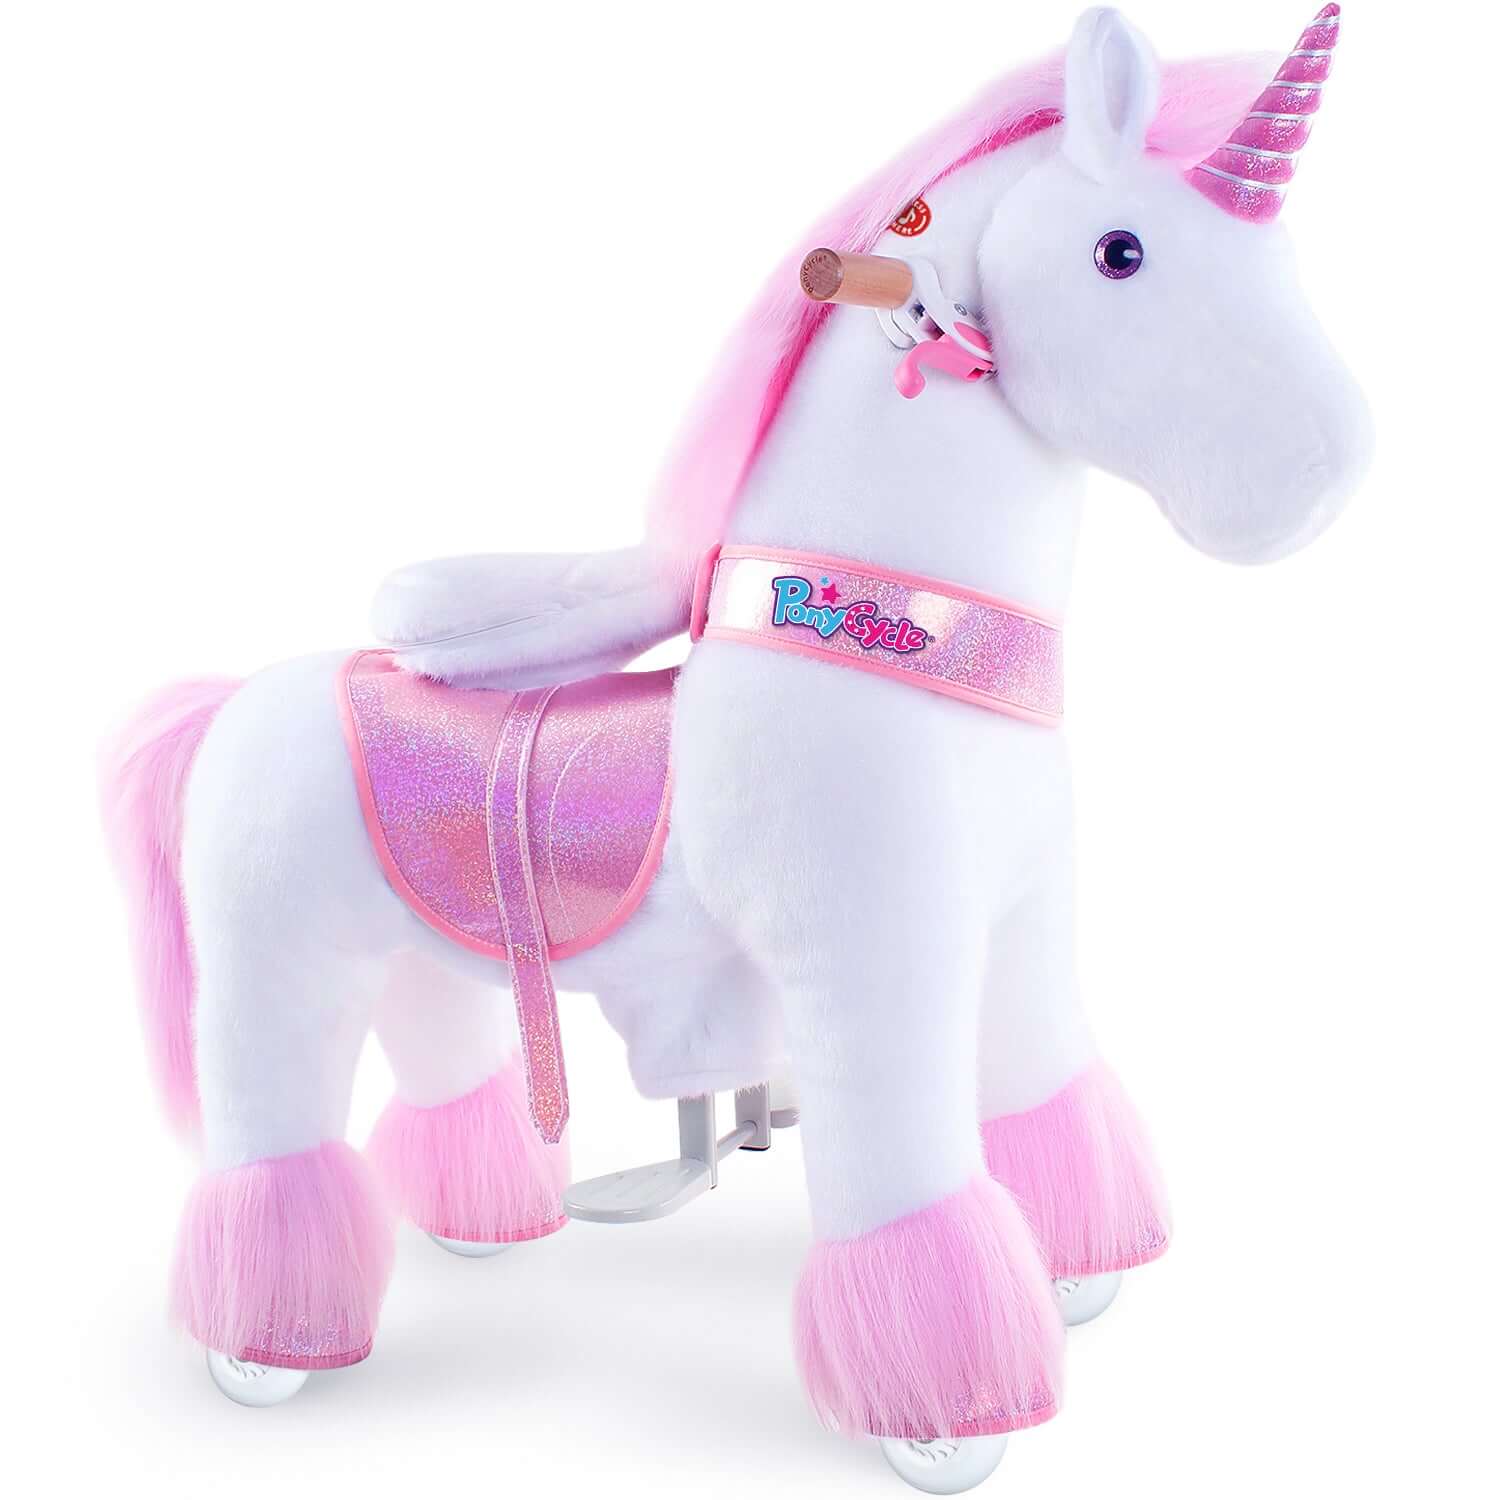 Ponycycle Pink Unicorn